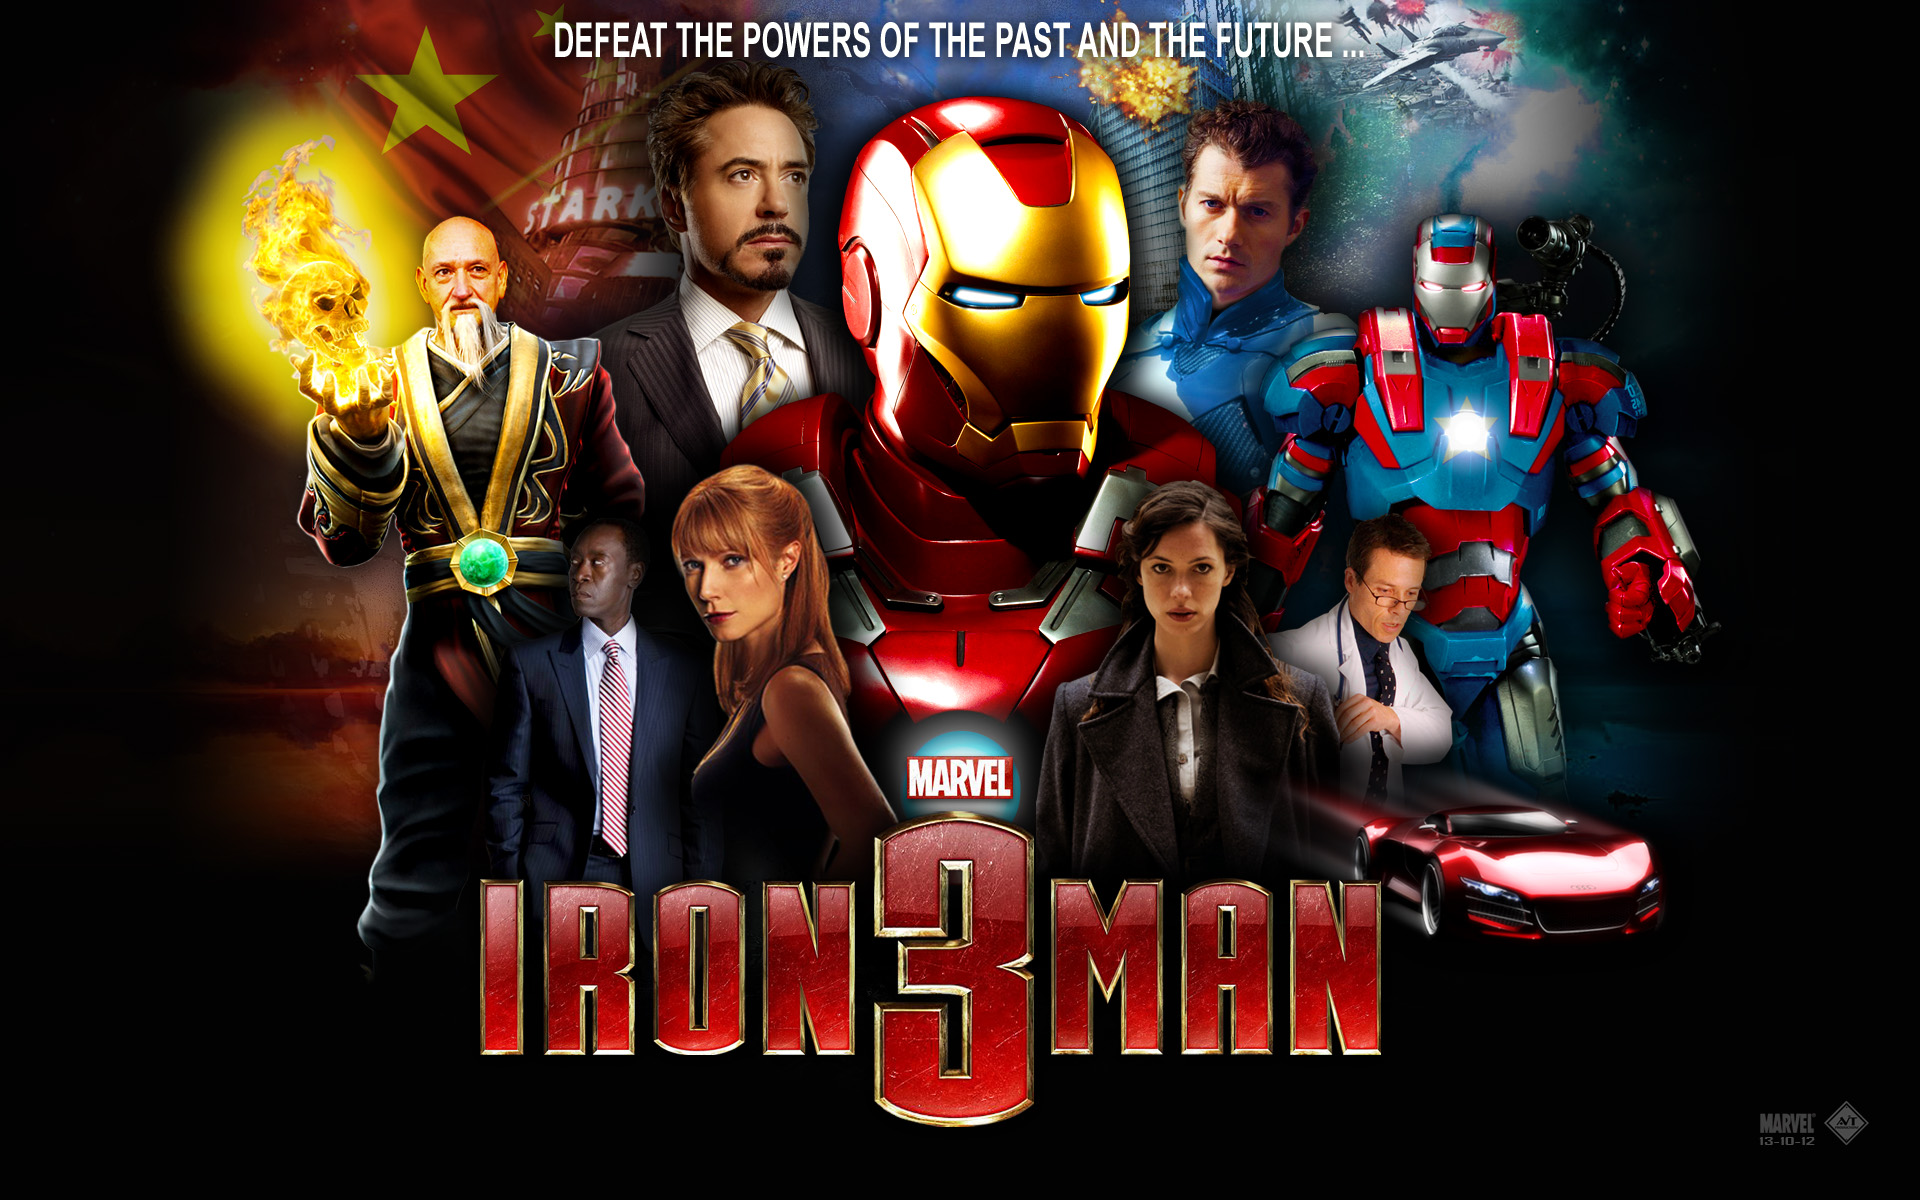 Iron Man 3 (2013) Hindi Dubbed Full Movie